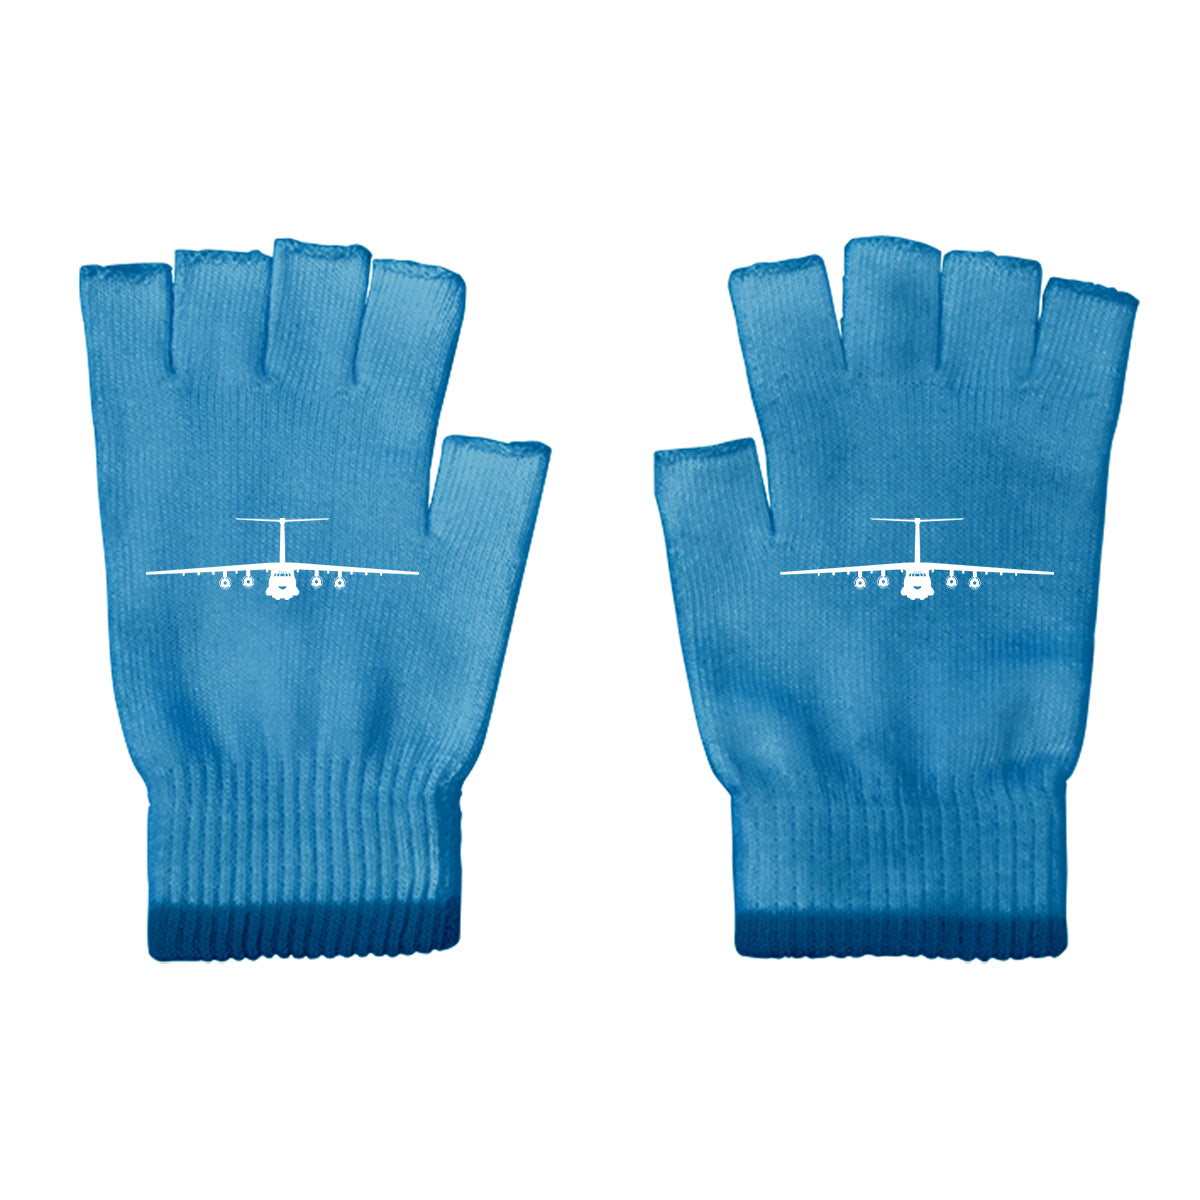 Ilyushin IL-76 Silhouette Designed Cut Gloves